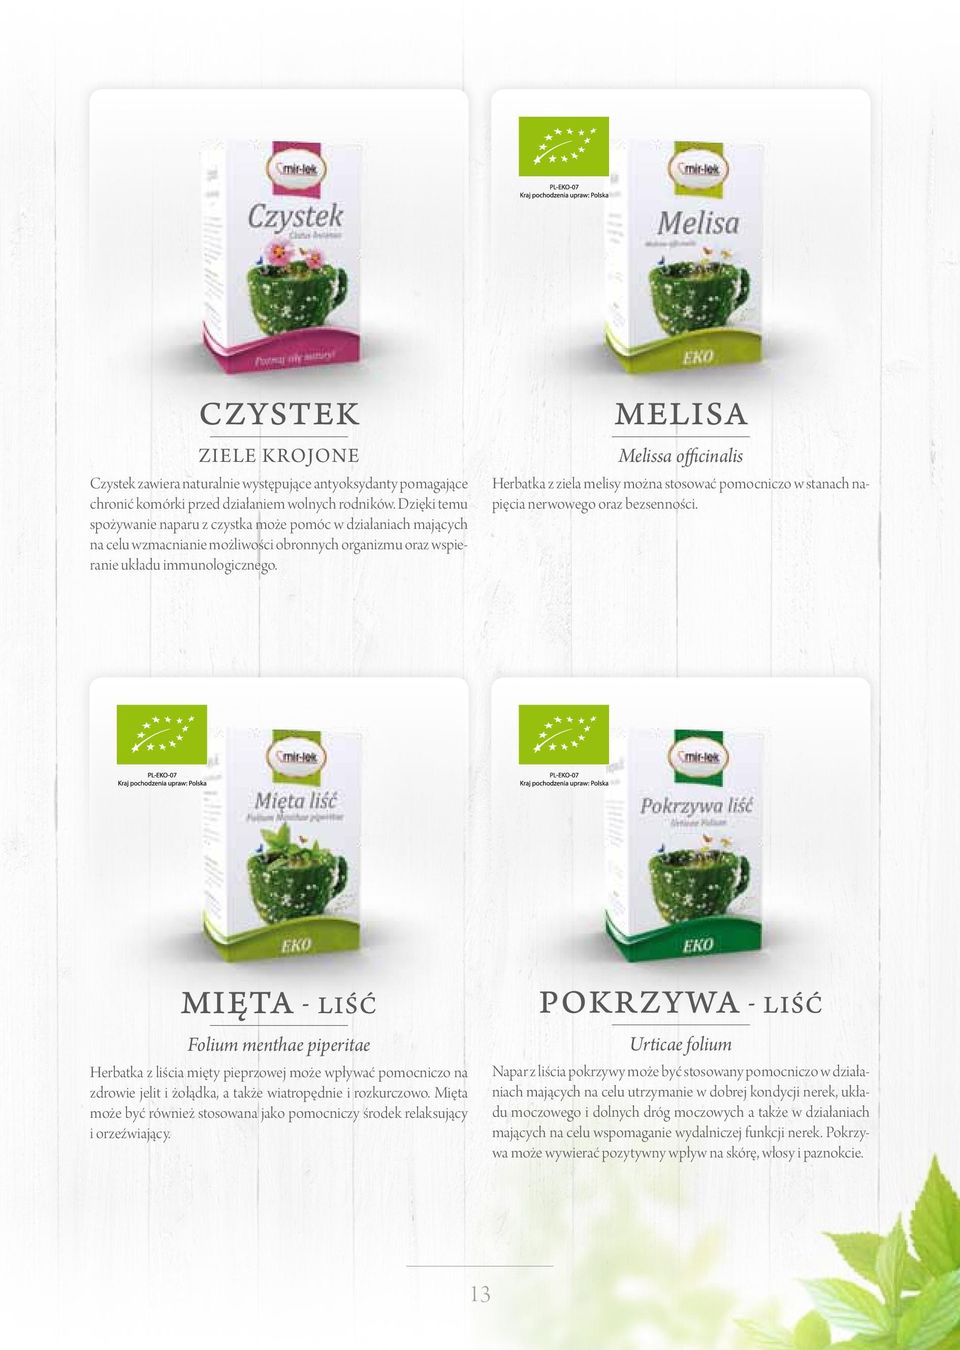 Herbatka z ziela melisy można stosować pomocniczo w stanach napięcia nerwowego oraz bezsenności.